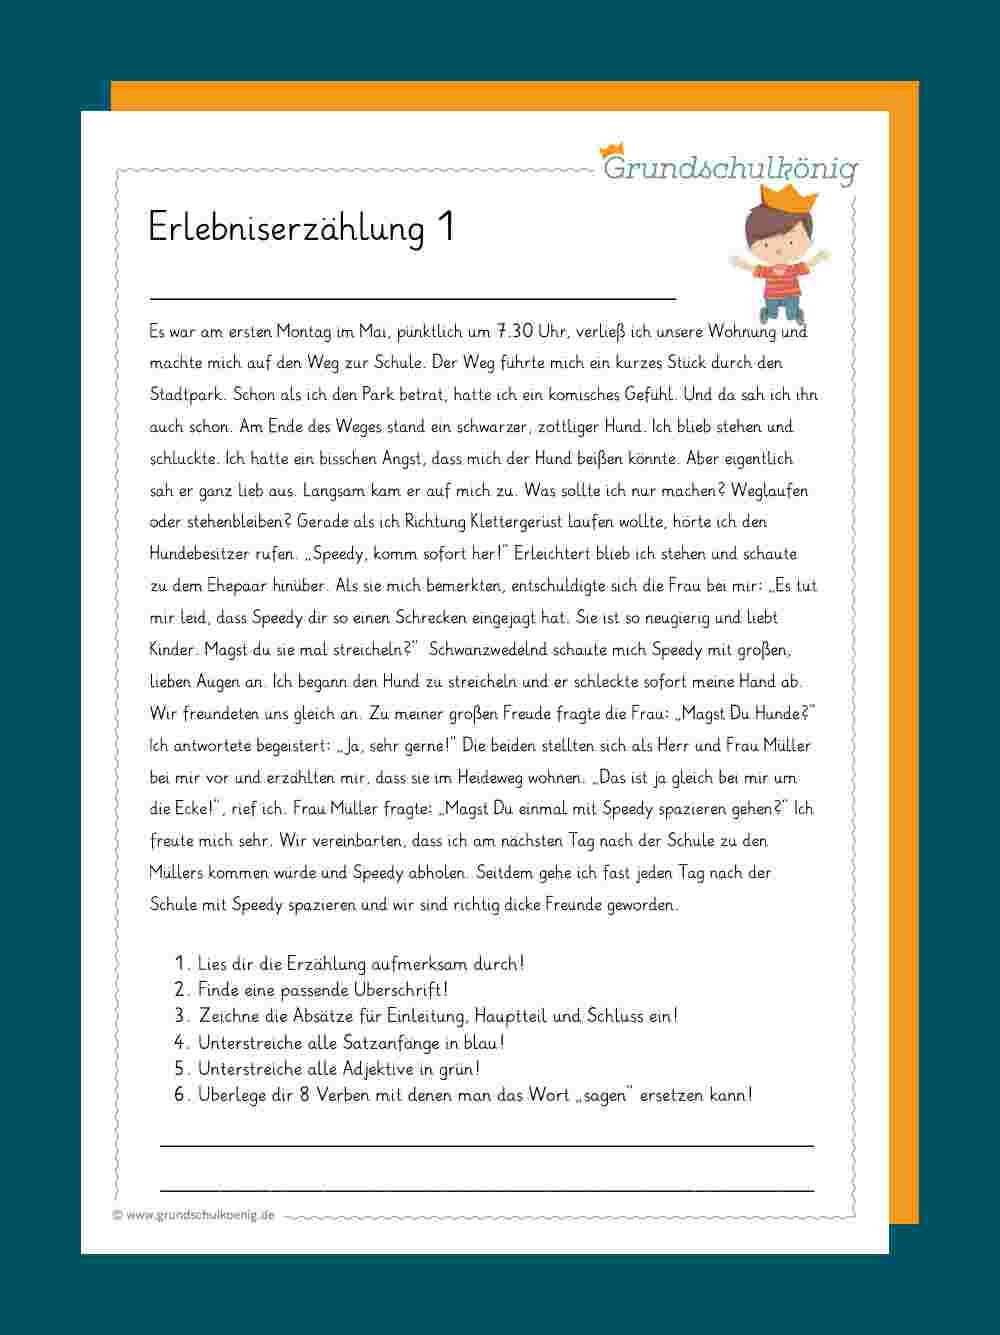 Erlebniserzahlung Erlebniserzahlung Deutsch Sprechen Lernen Grundschule